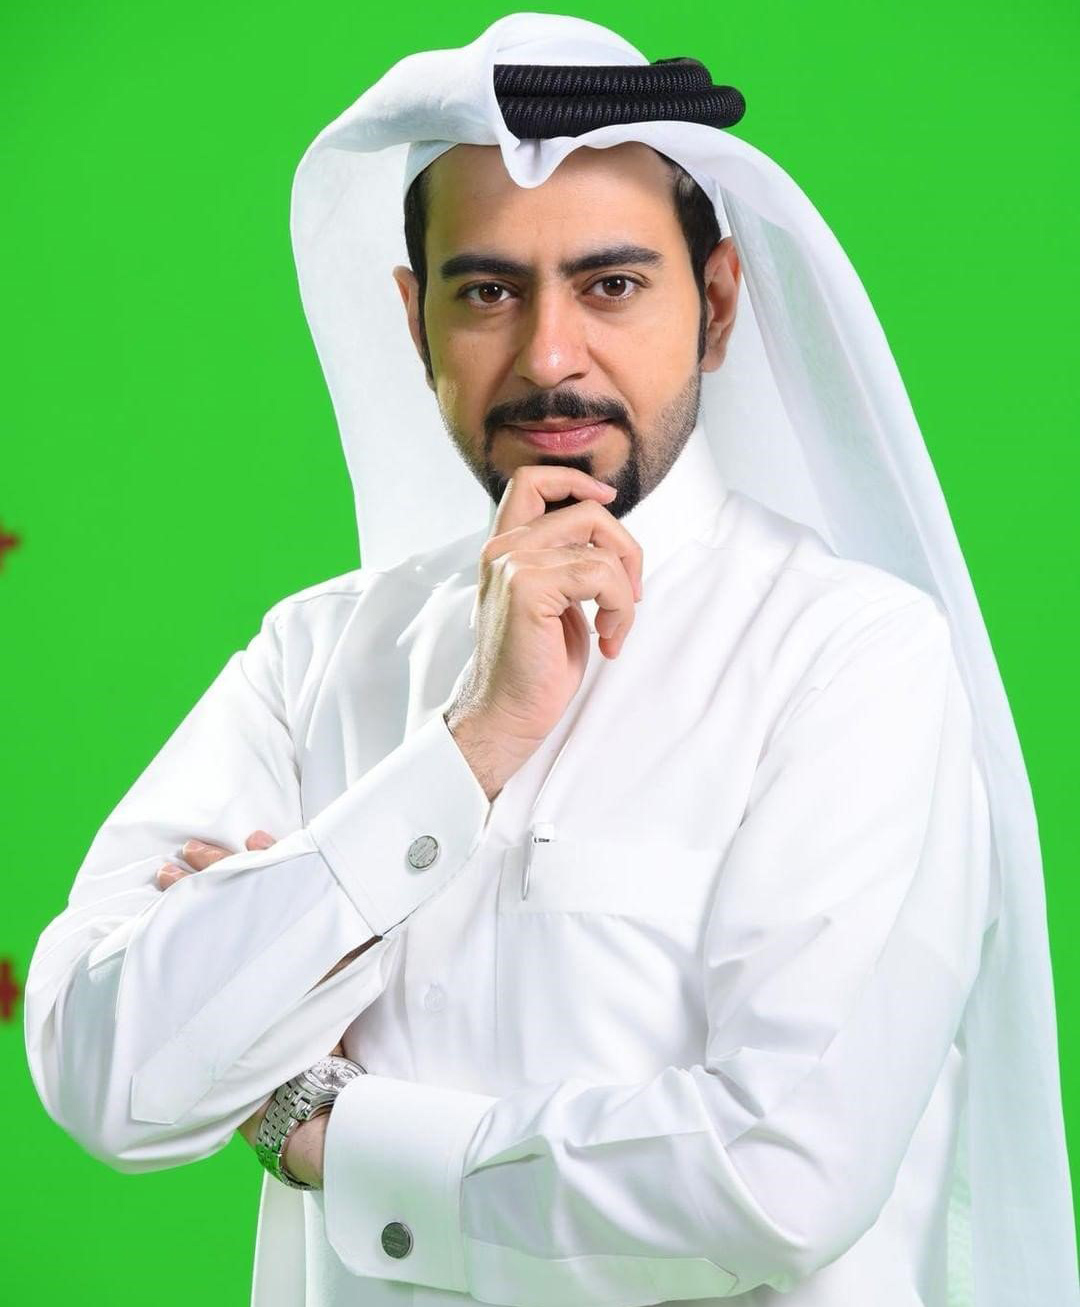 Mohammed Al-Jefairi